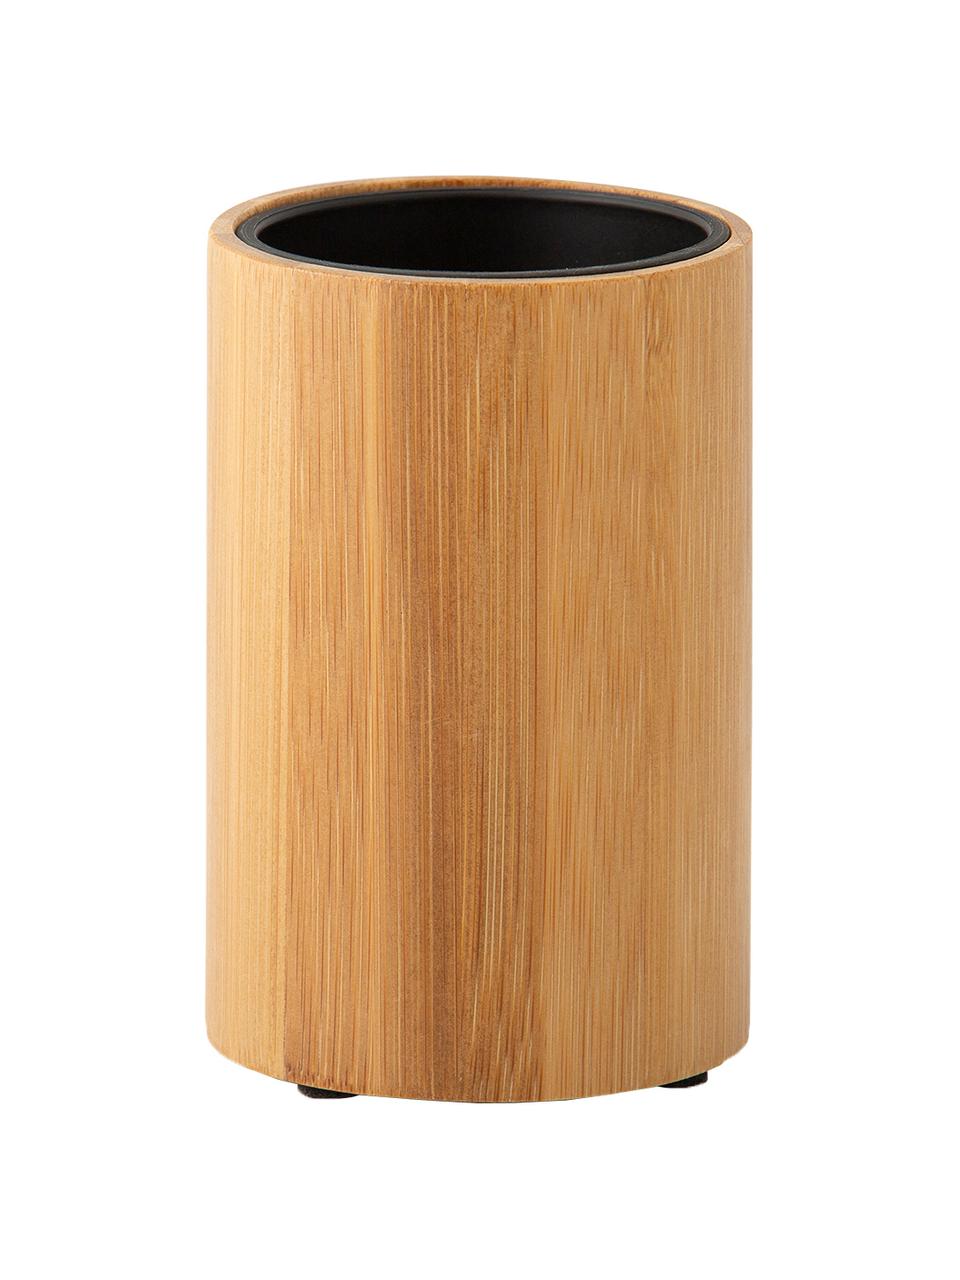 Kubek na szczoteczki Beckton, Drewno bambusowe, czarny, Ø 7 x W 11 cm